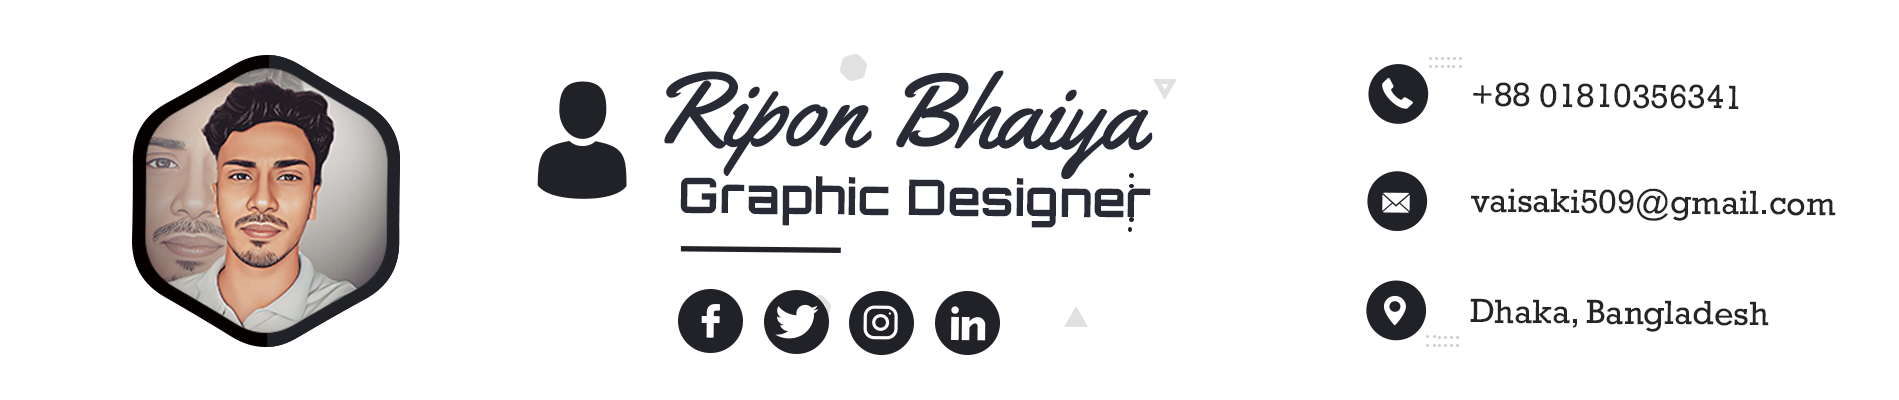 Ripon Bhaiya's profile banner